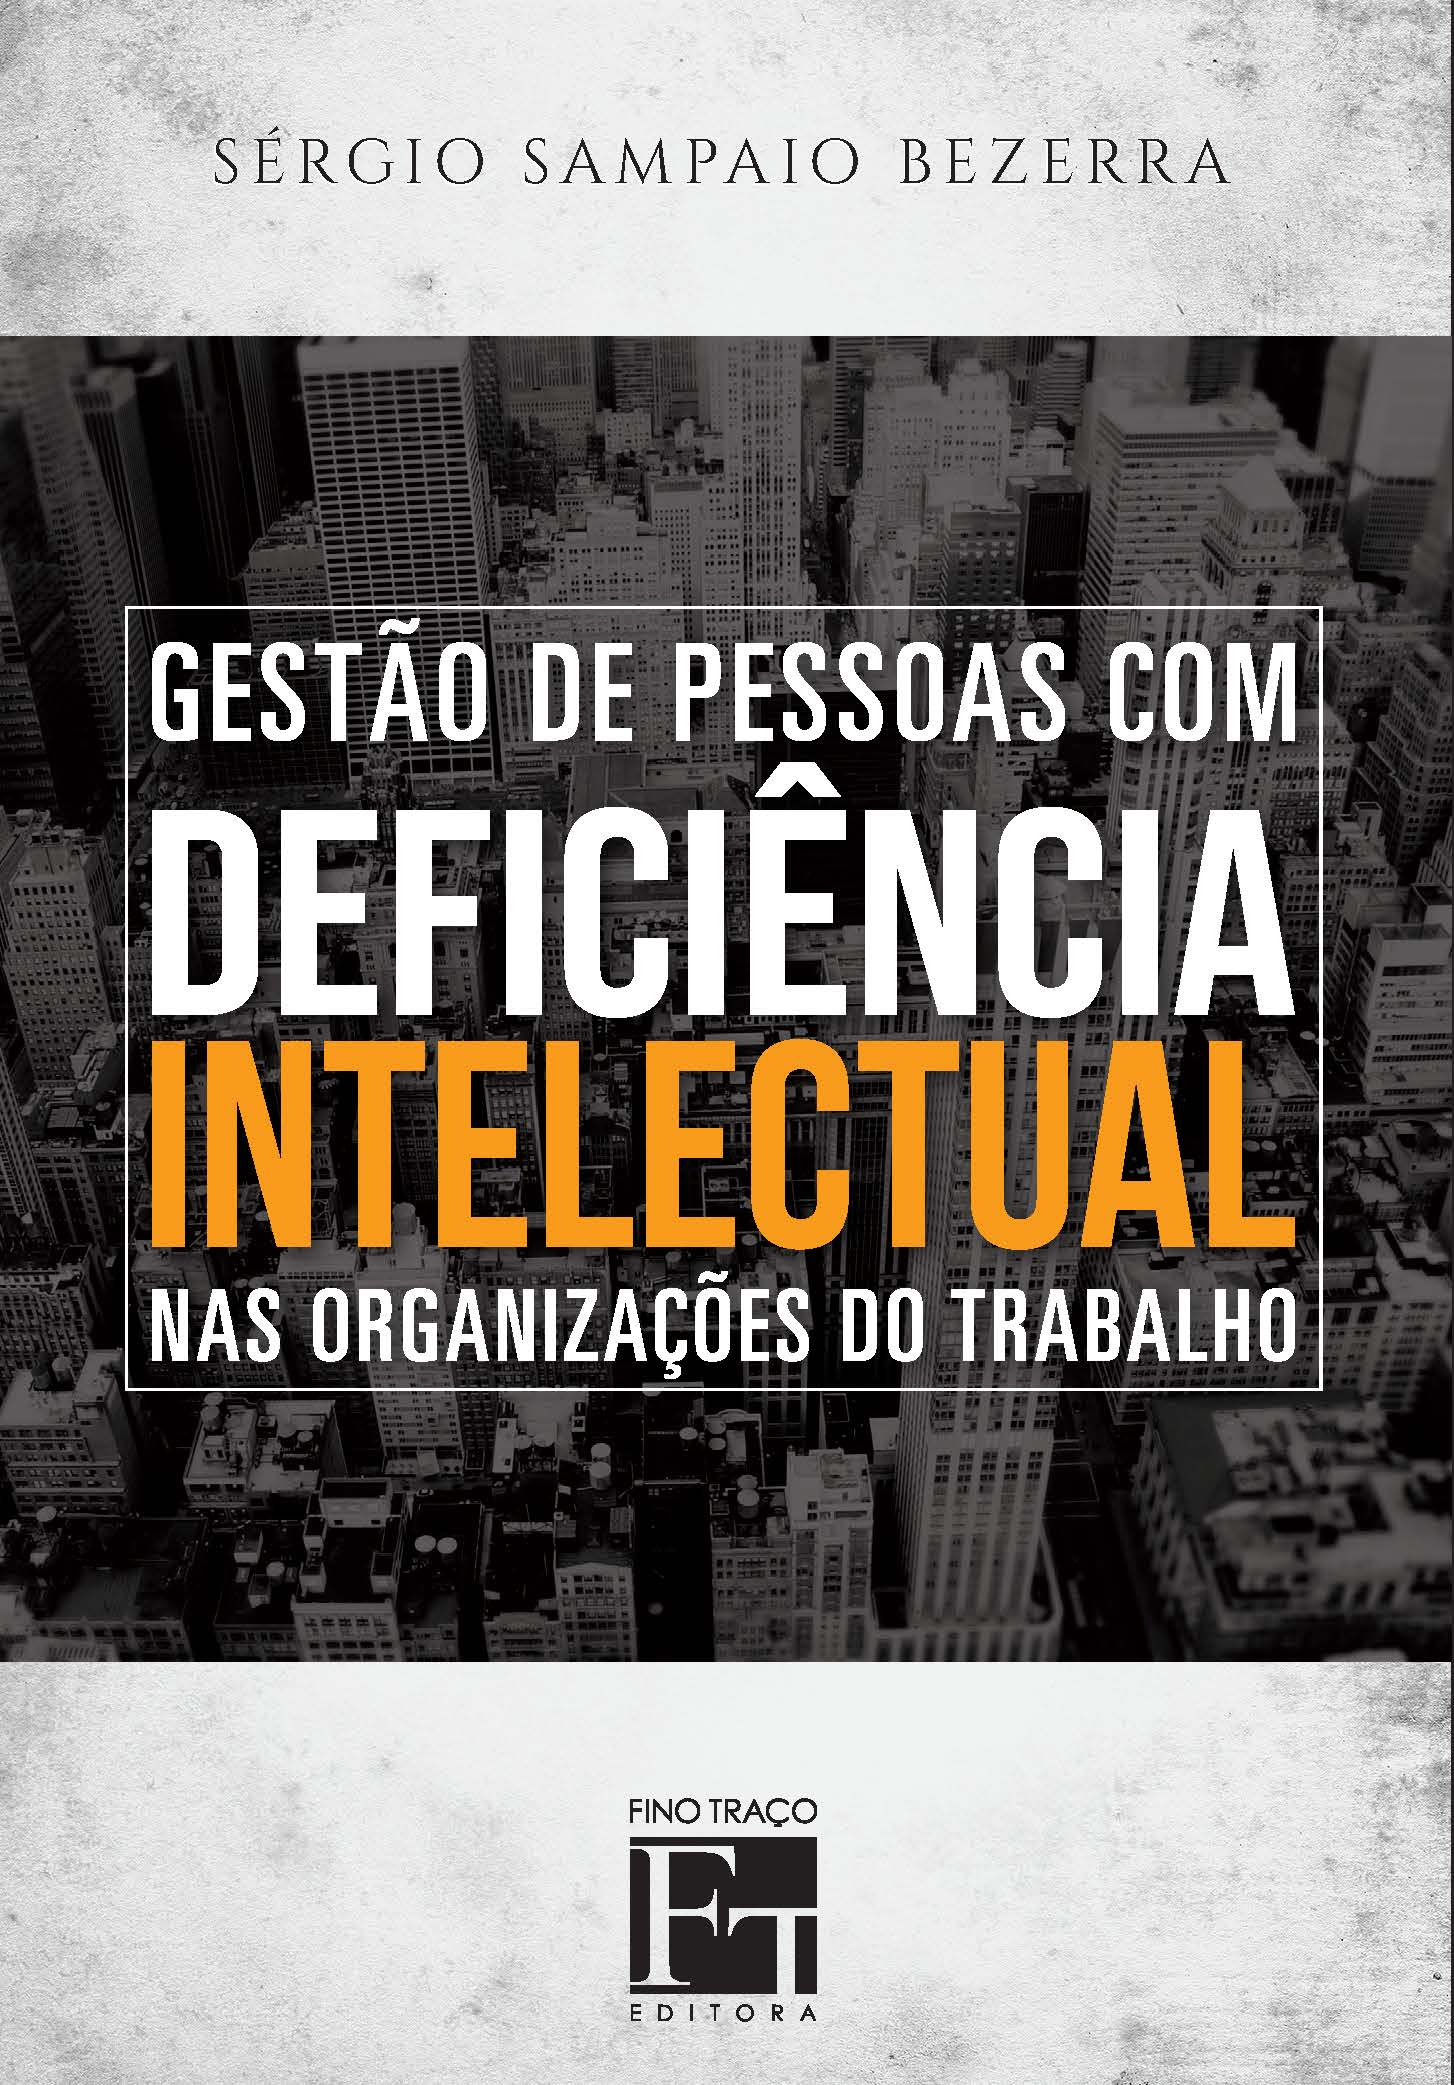 GESTAO DE PESSOAS COM DEFICIENCIA INTELECTUAL NAS ORGANIZACOES DE TRABALHO